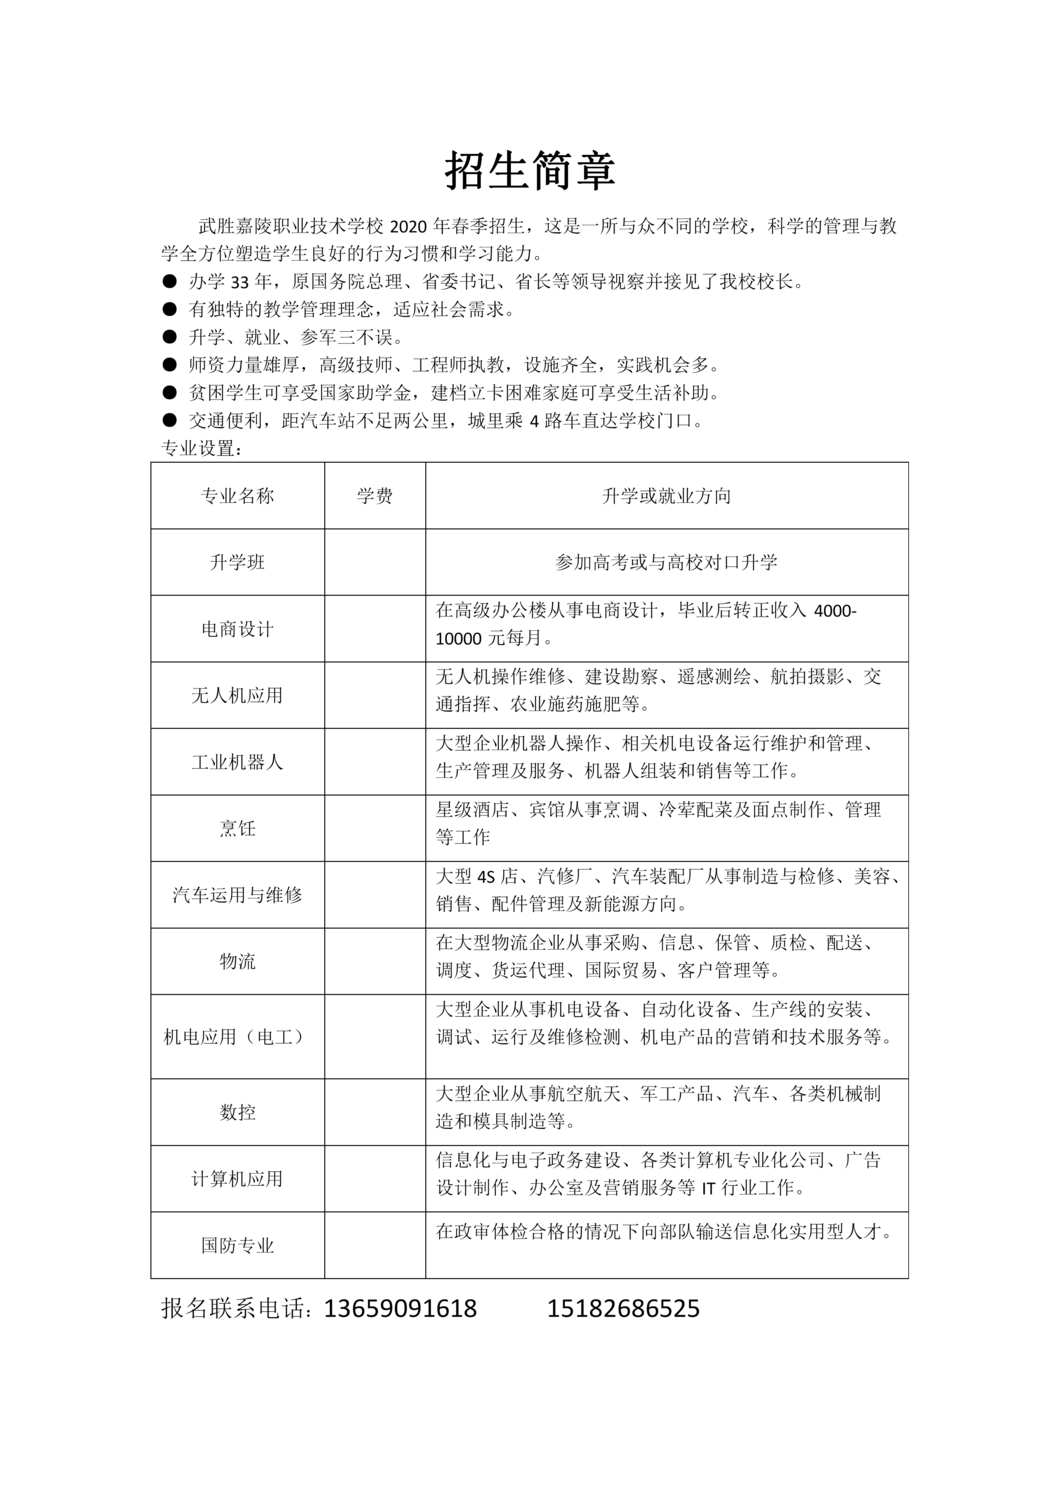 武勝嘉陵職業技術學校2020年春季招生簡章